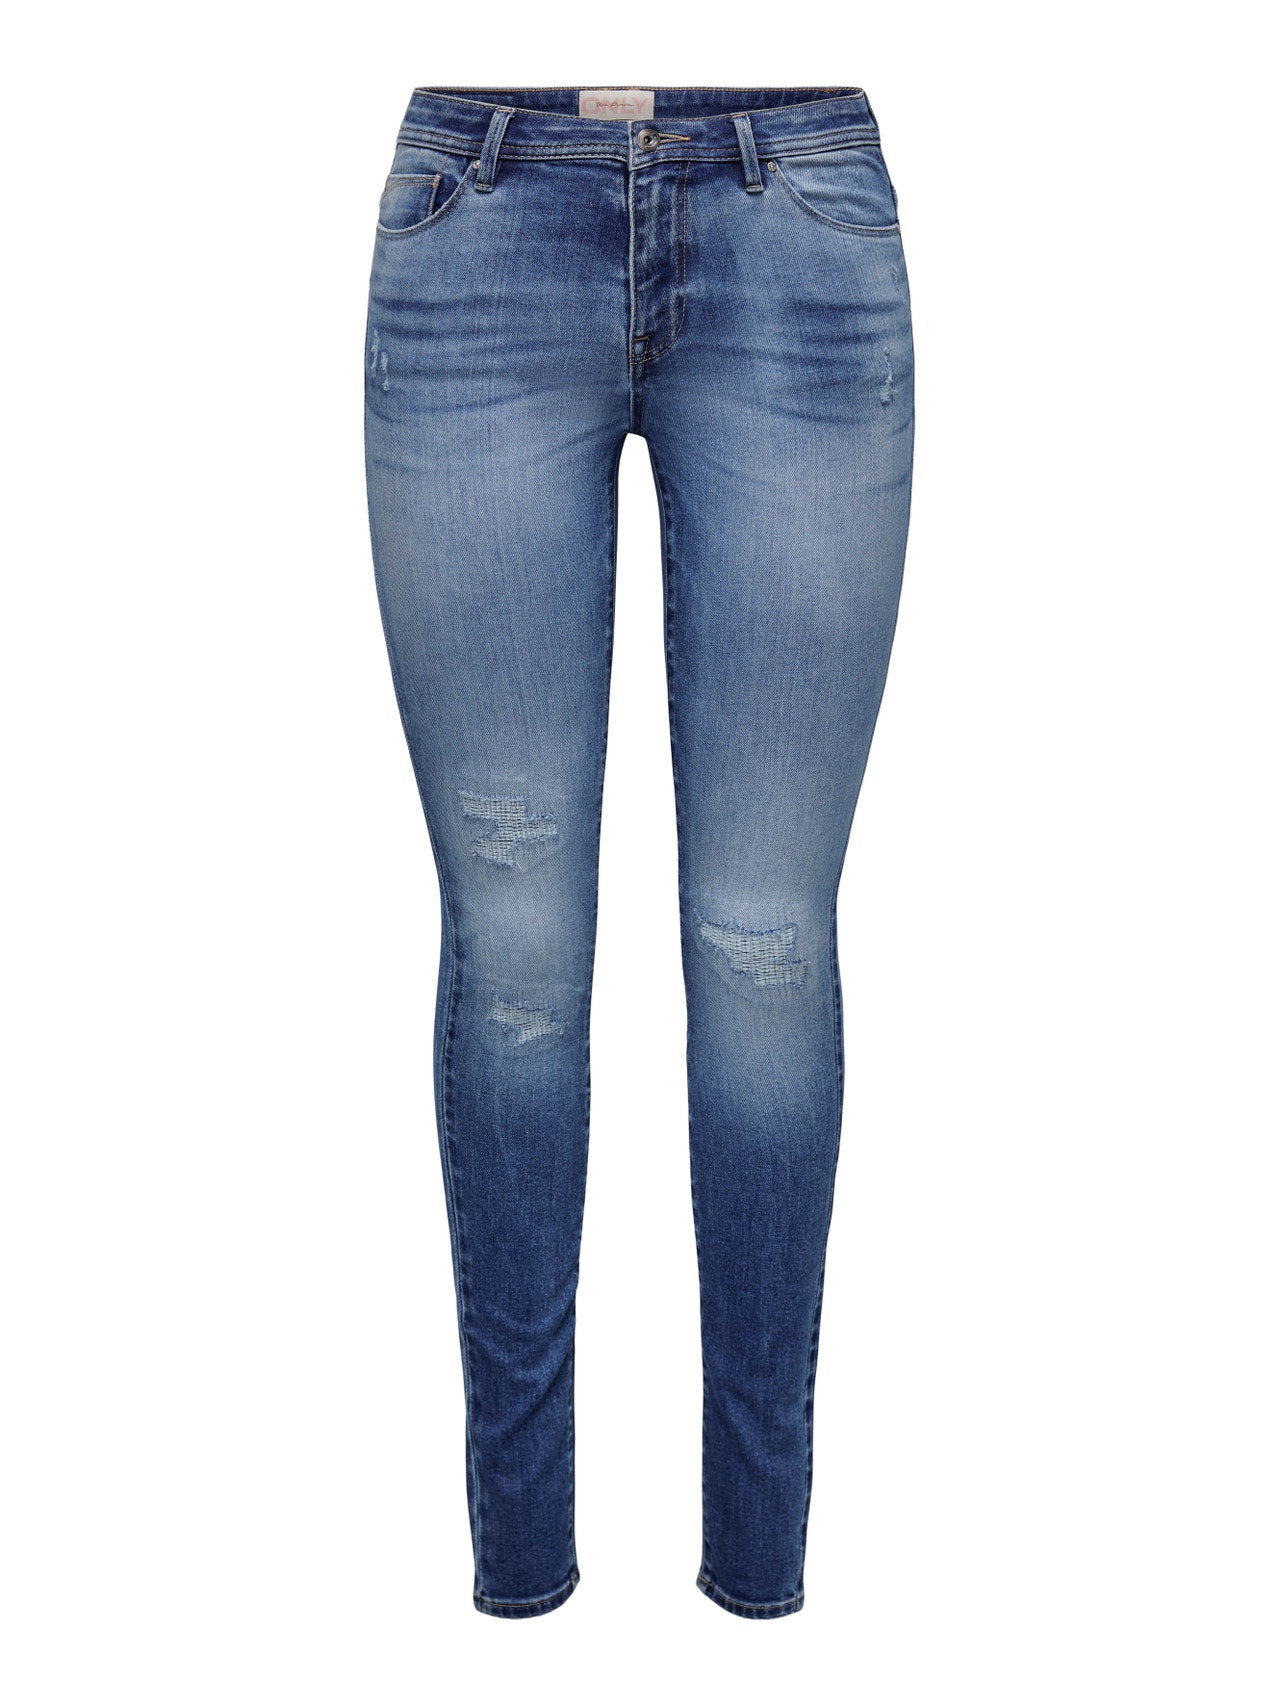 ONLY Skinny Fit Middels høy midje Jeans -Medium Blue Denim - 15263742